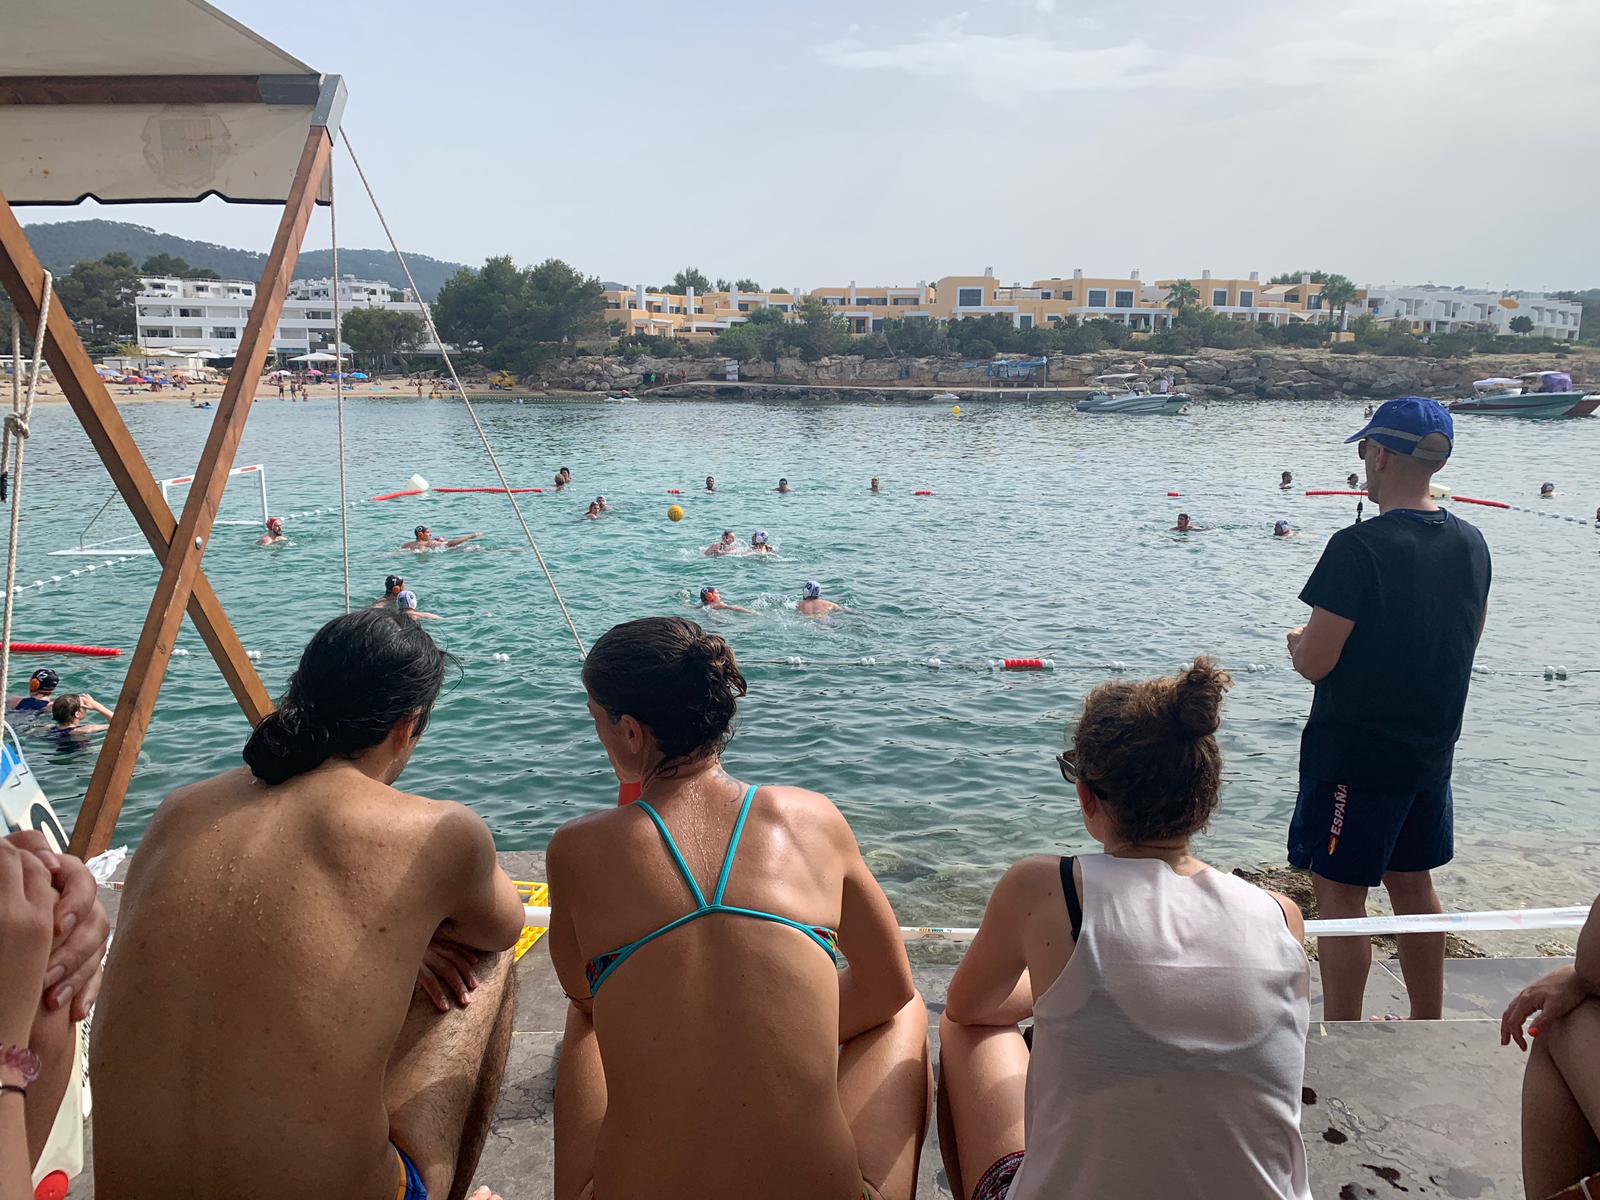 actualidad náutica, noticias náuticas, waterpolo, Sant Josep, Ibiza, natación, mar, piscina, equipo 